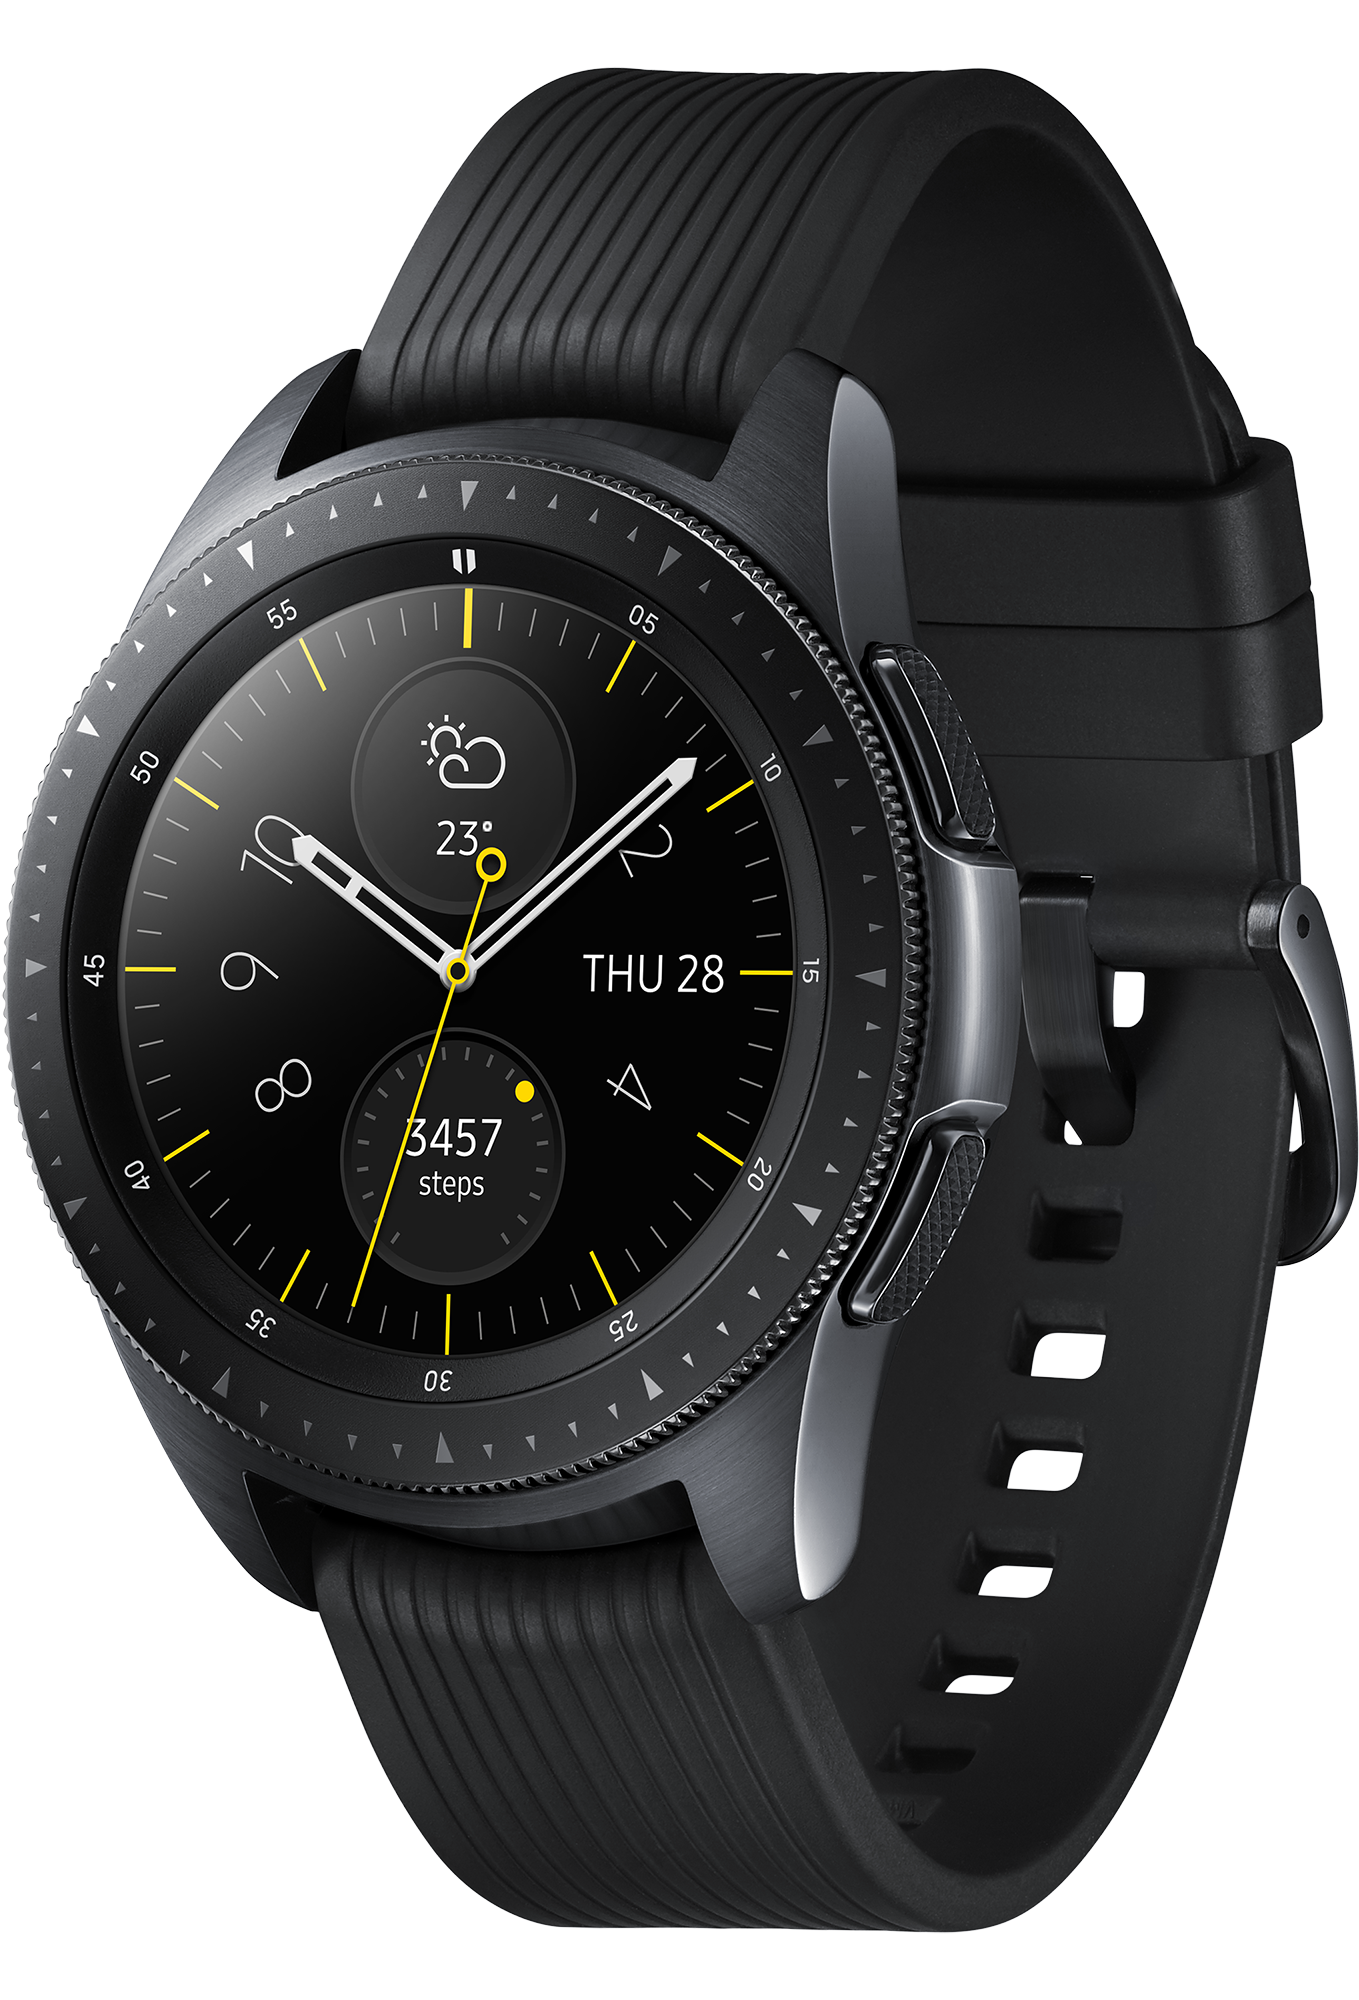 Buy Samsung Galaxy Watch | Black 42mm | Samsung Shop IE